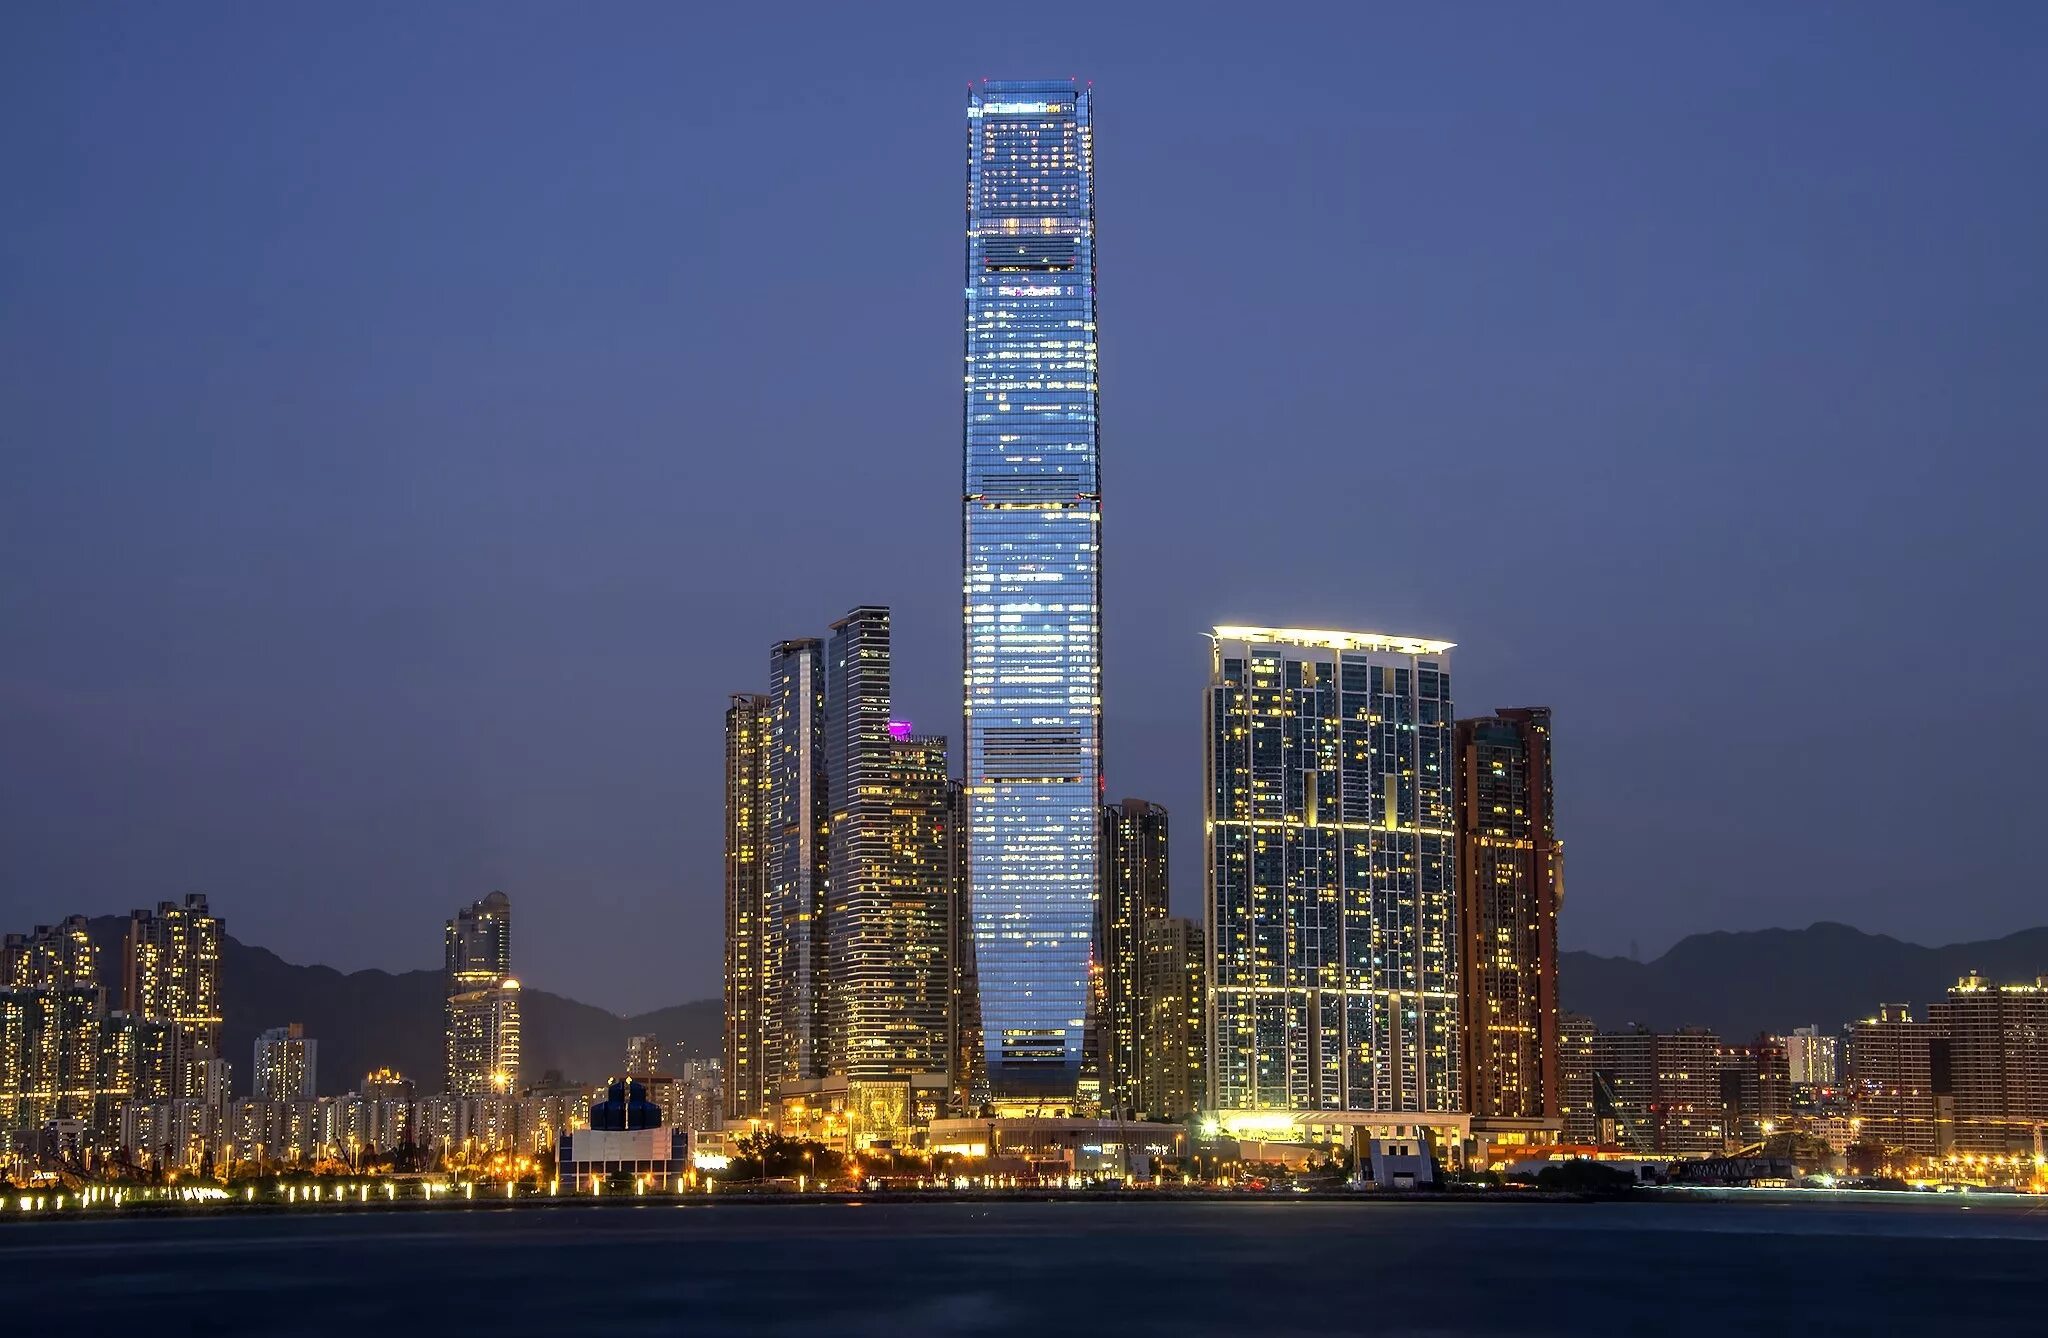 Небоскребы гонконга. Международный коммерческий центр (International Commerce Centre) Гонконг. Международный финансовый центр небоскрёб в Гонконге. Небоскреб Гонконга скайскрепер. Международный коммерческий центр (484 м). Гонконг, Китай.